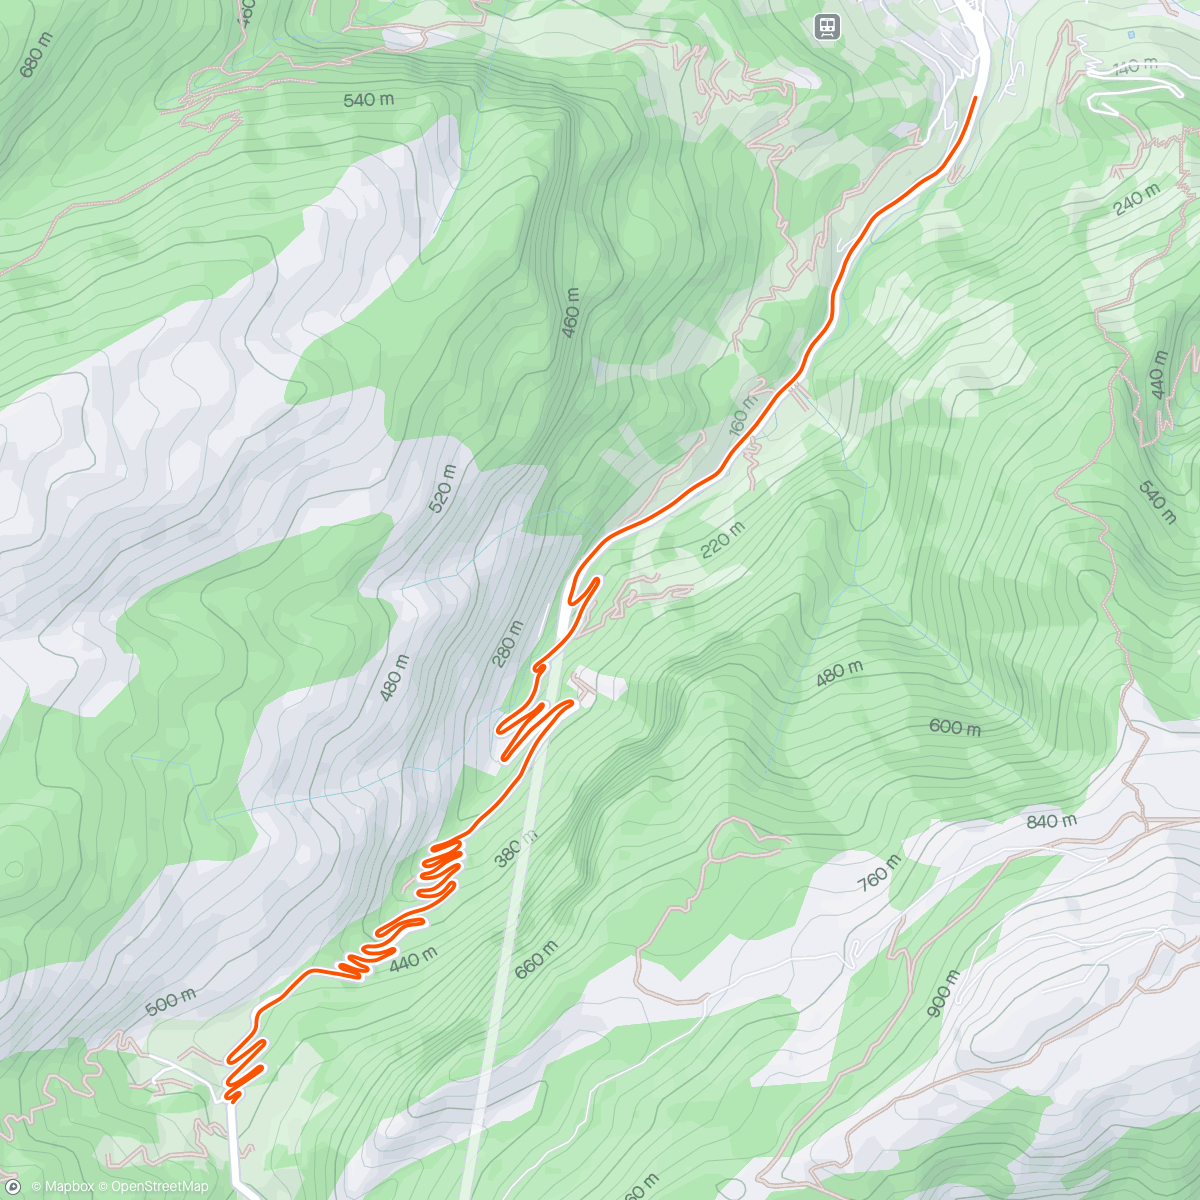 「ROUVY - Coll de Soller (North)」活動的地圖